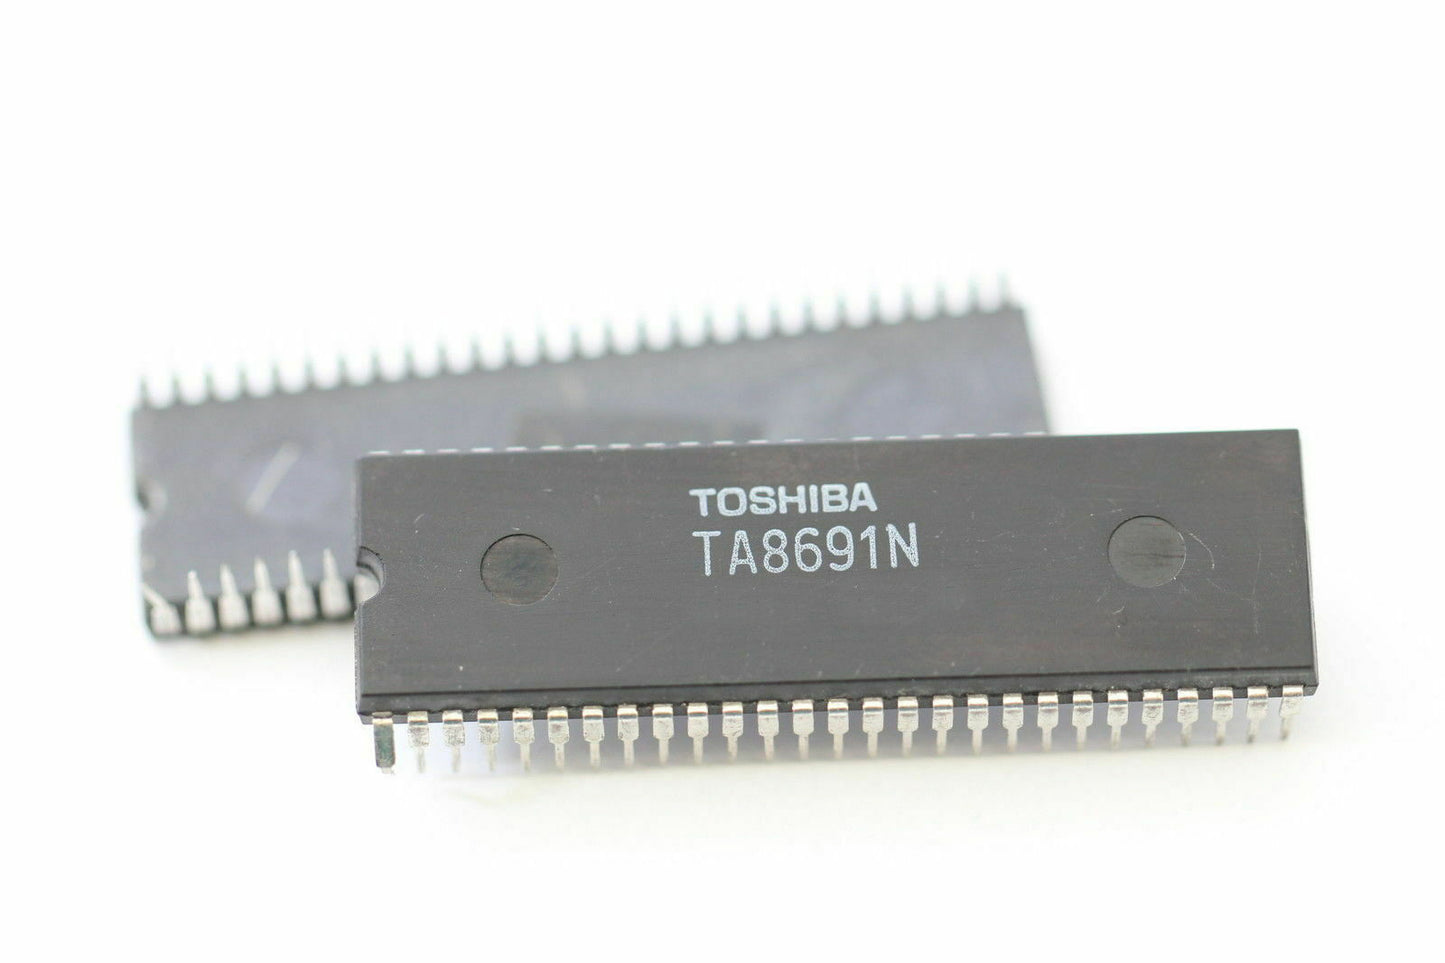 TOSHIBA TA8691N componente elettronico, circuito integrato, 48 contatti